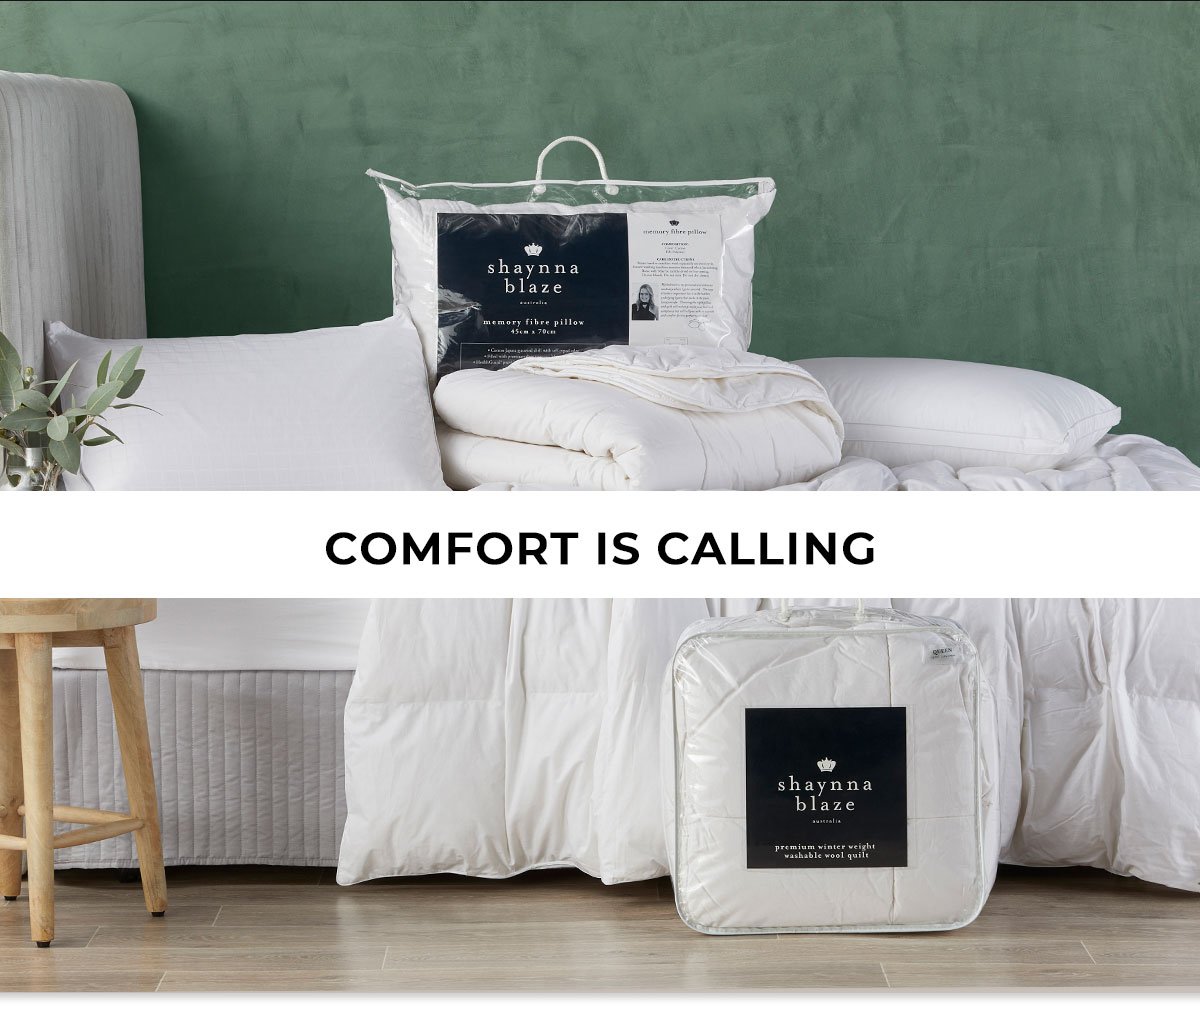 Comfort is calling